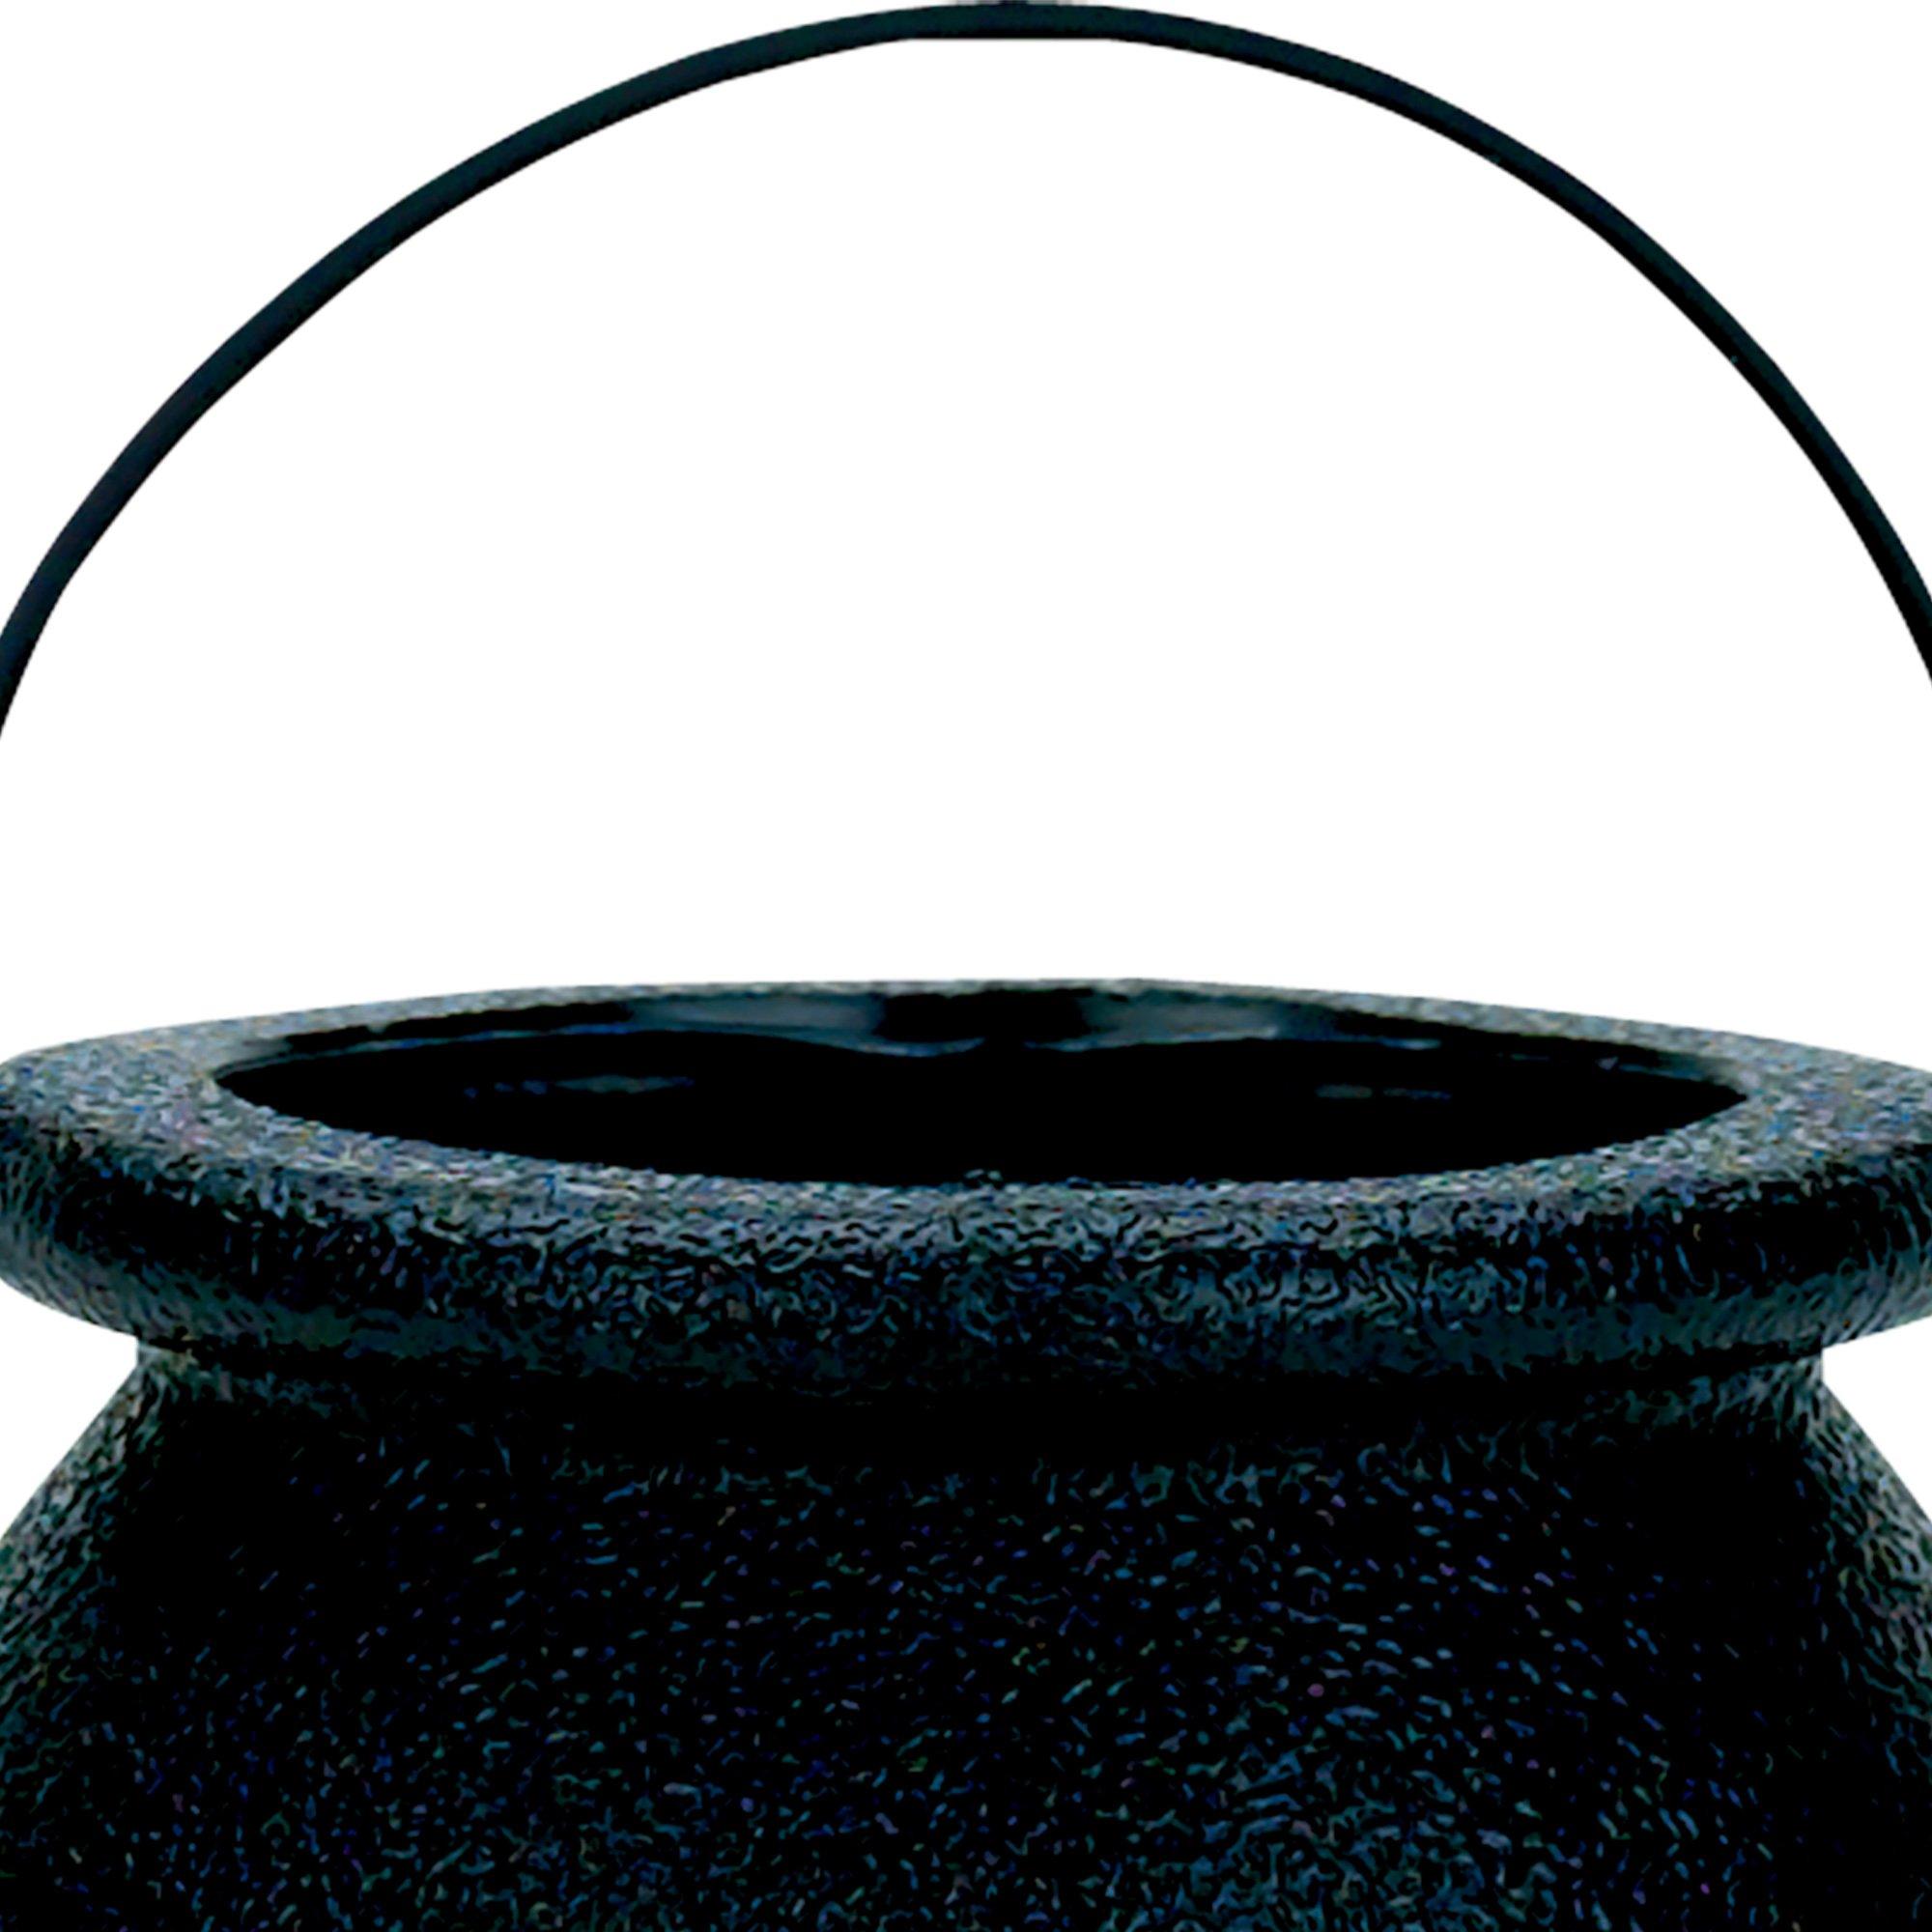 Mini Black Candy Cauldrons, 12ct